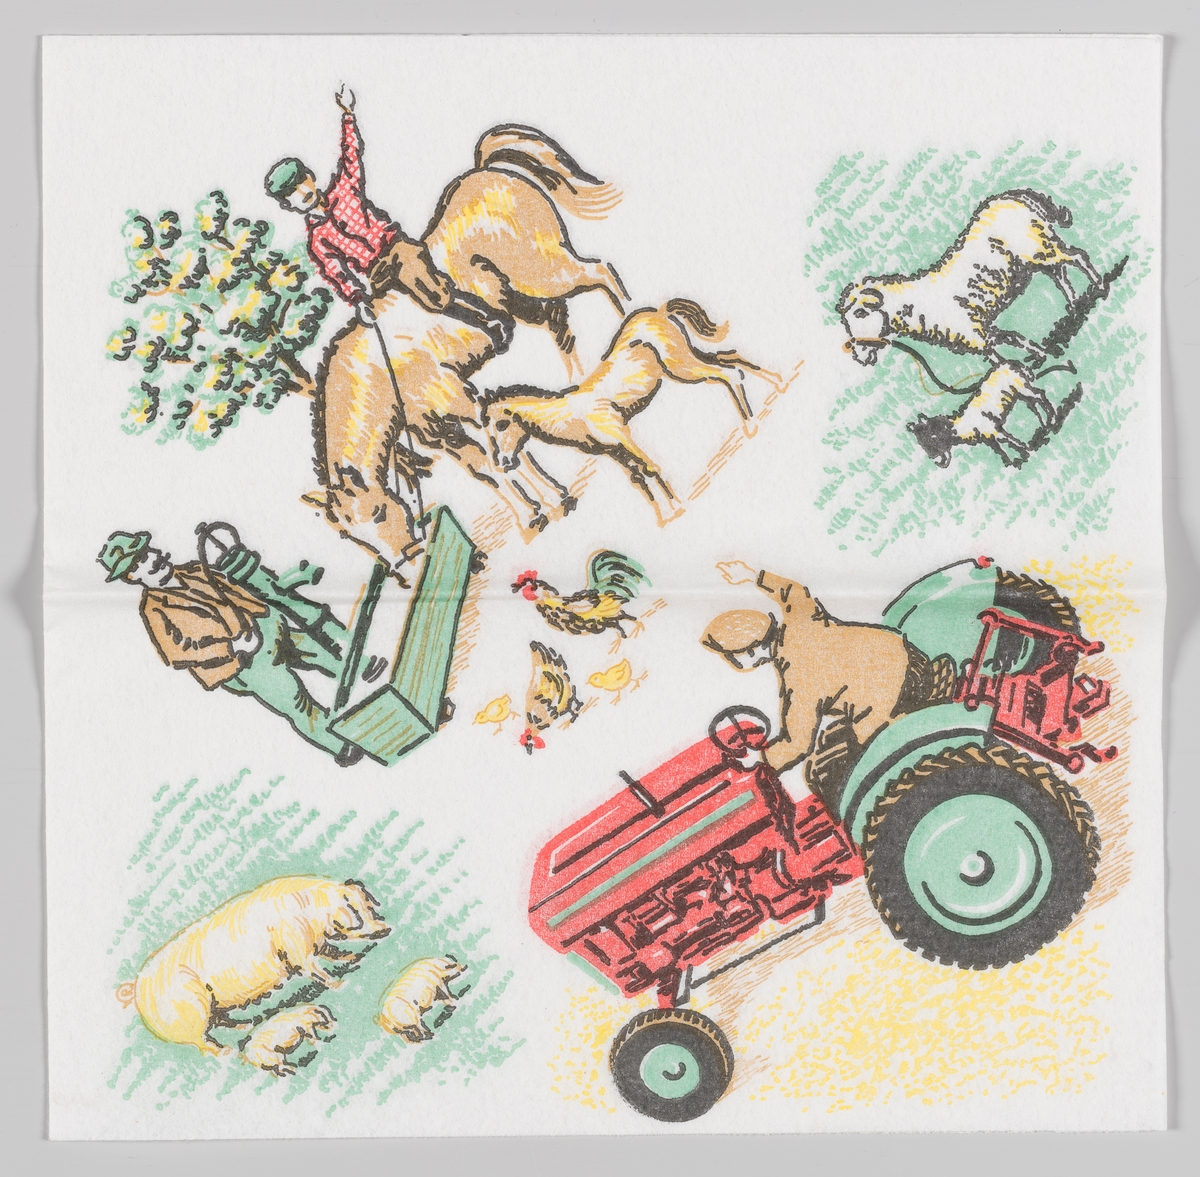 Scener fra en bondegård. En gutt sitter på en hest og ved siden av står et føll. Hester drikker fra et vanntrau. En mann pumper vann opp i vanntrauet til hesten. En hane, en høne og et par kyllinger løper rundt på bakken. Et får står sammen med lammet sitt. En purke går sammen med to grisunger. En mann kjører på en traktor og vinker.